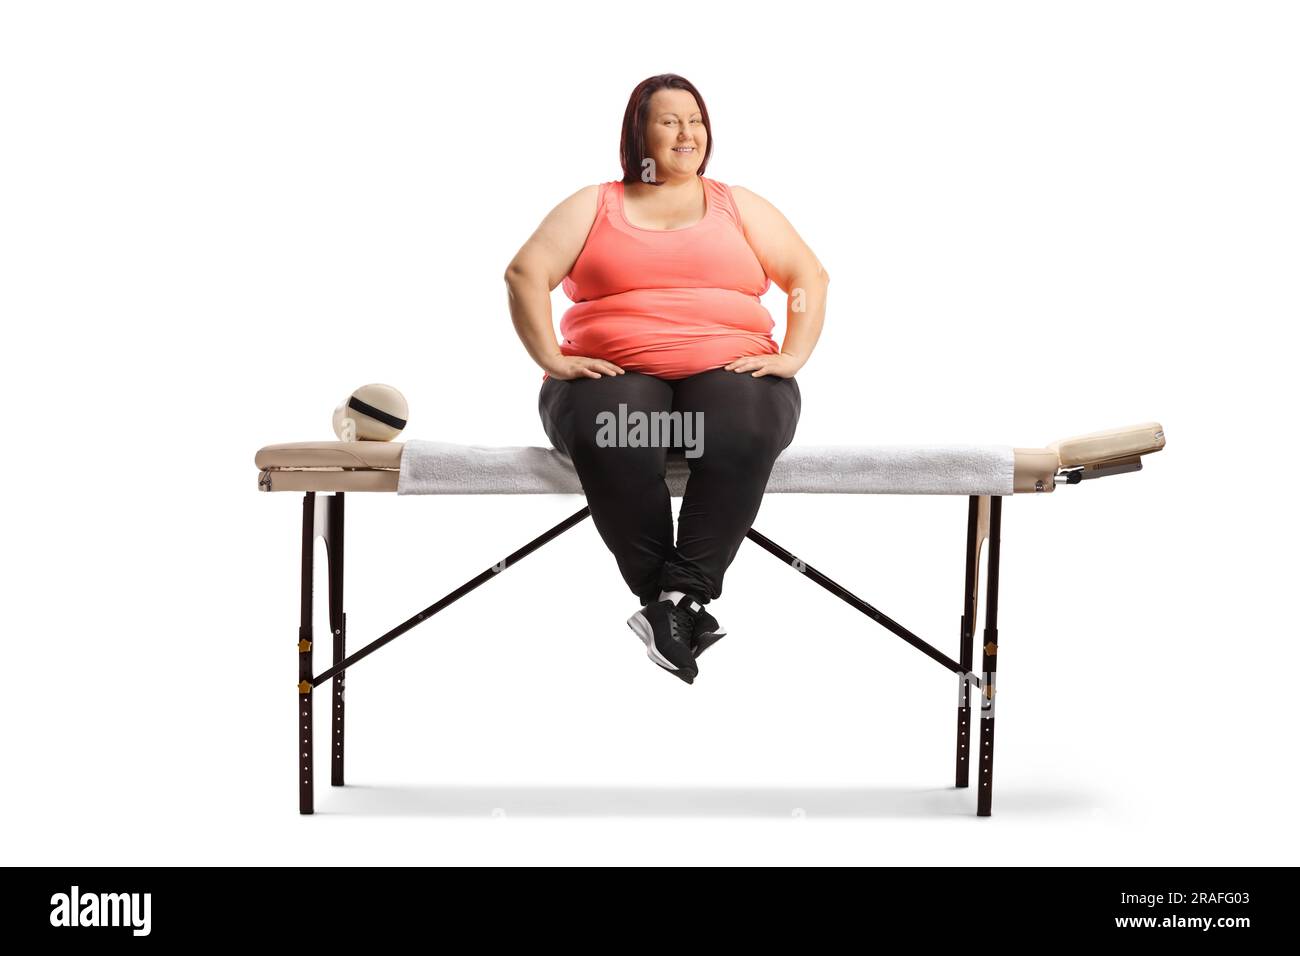 Femme en surpoids assise sur une table de massage isolée sur fond blanc Banque D'Images